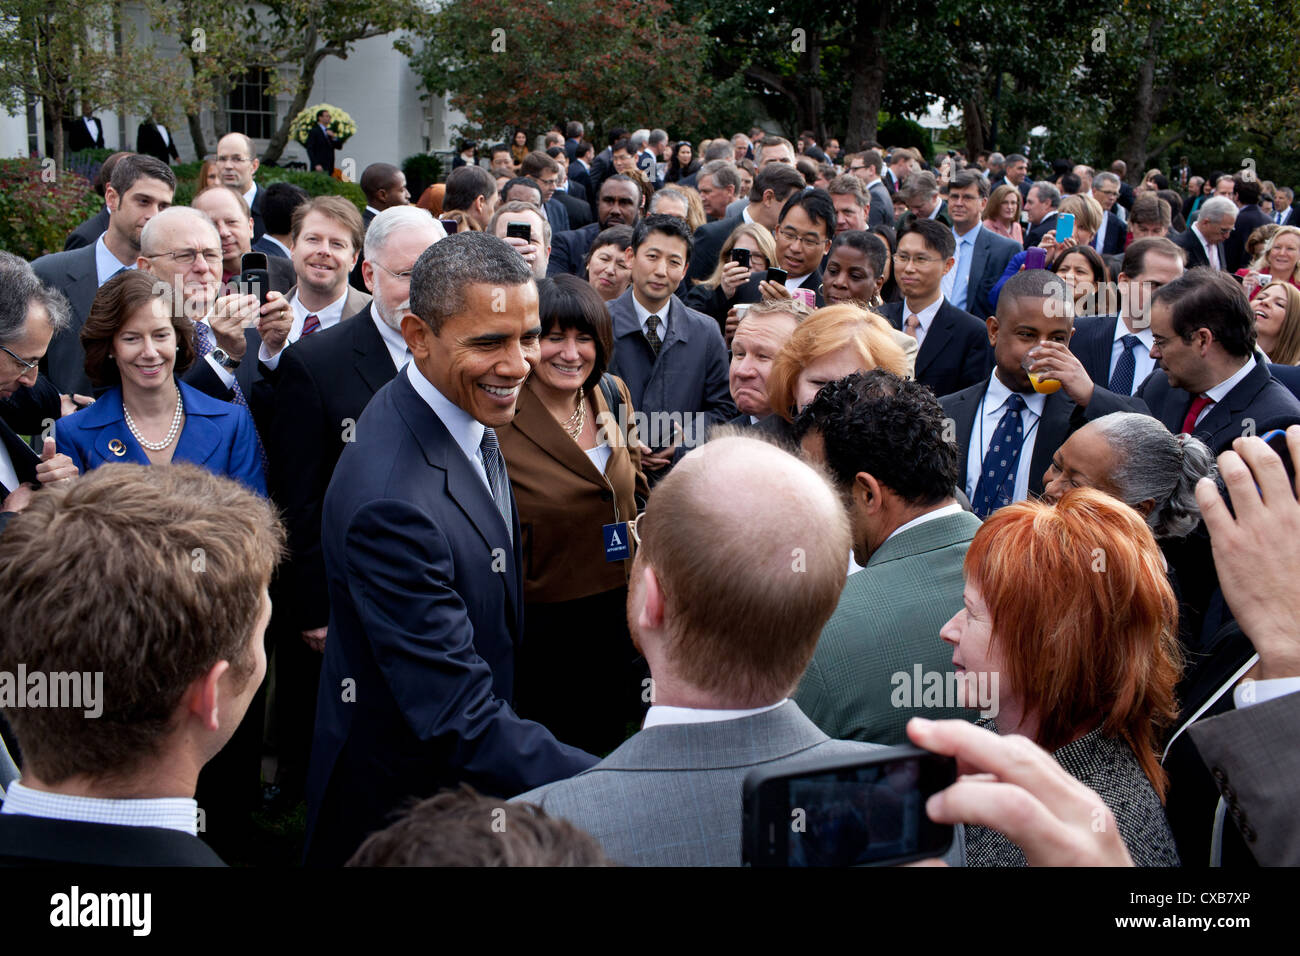 Le président américain Barack Obama descend par une réception en l'honneur de la signature de l'échange de l'aide à l'adaptation de la Loi sur l'extension et la Corée, le Panama et la Colombie des accords de libre-échange le 21 octobre 2011 dans la roseraie de la Maison Blanche. Banque D'Images